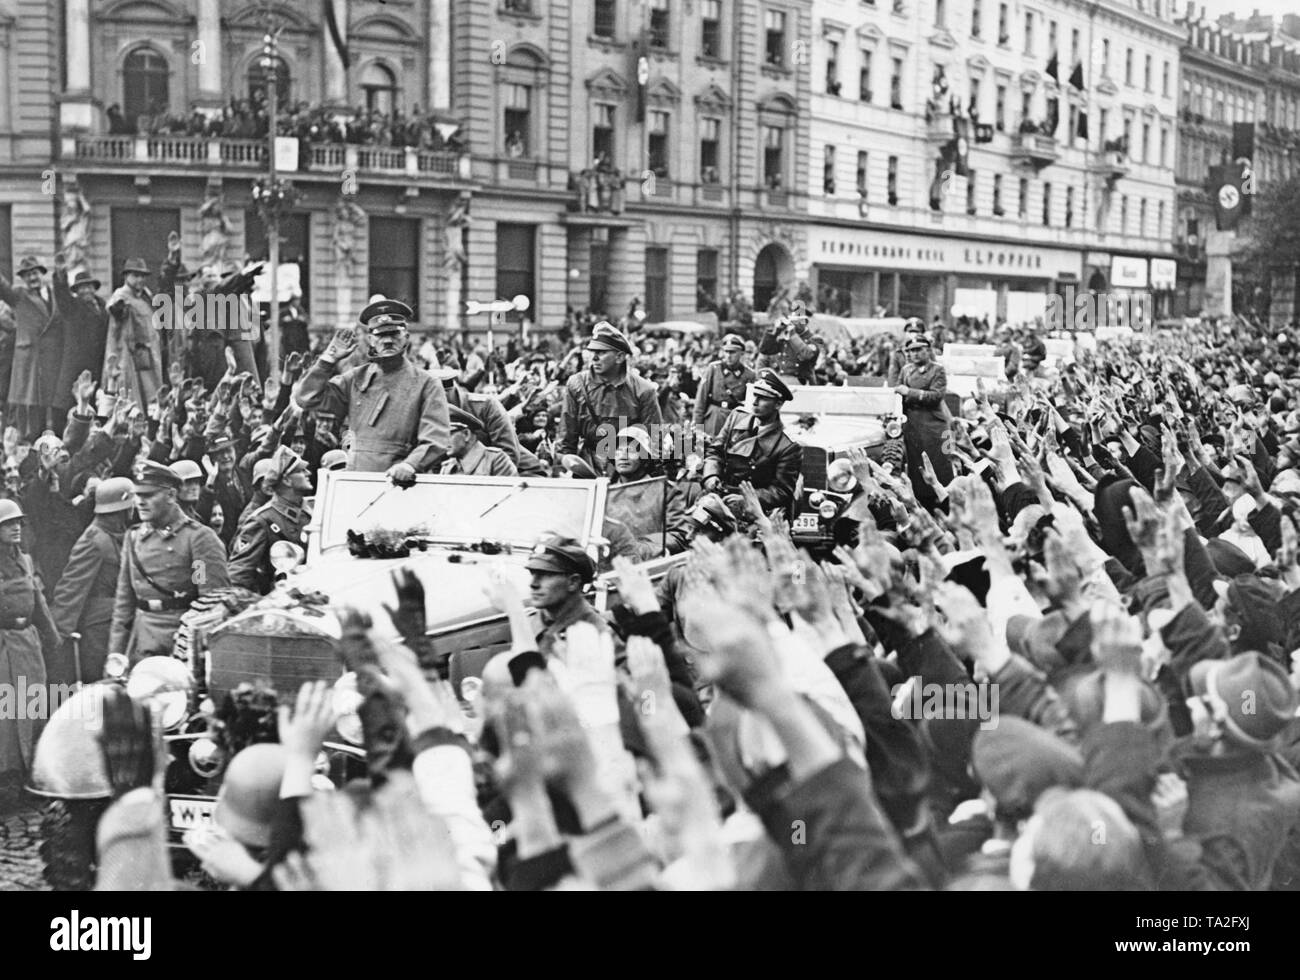 Adolf Hitler entrant Karlsbad (aujourd'hui Karlovy Vary) le 4 octobre 1938. Son cortège est reçu gaiement par la population. Ils saluent le salut nazi. Dans sa voiture à l'arrière sur la droite, l'Adjudant de la Luftwaffe Nicolaus von Below. Assis en face de lui, le Général Walter von Reichenau. Les gardes du corps de la SS suivre avec d'autres voitures. Banque D'Images